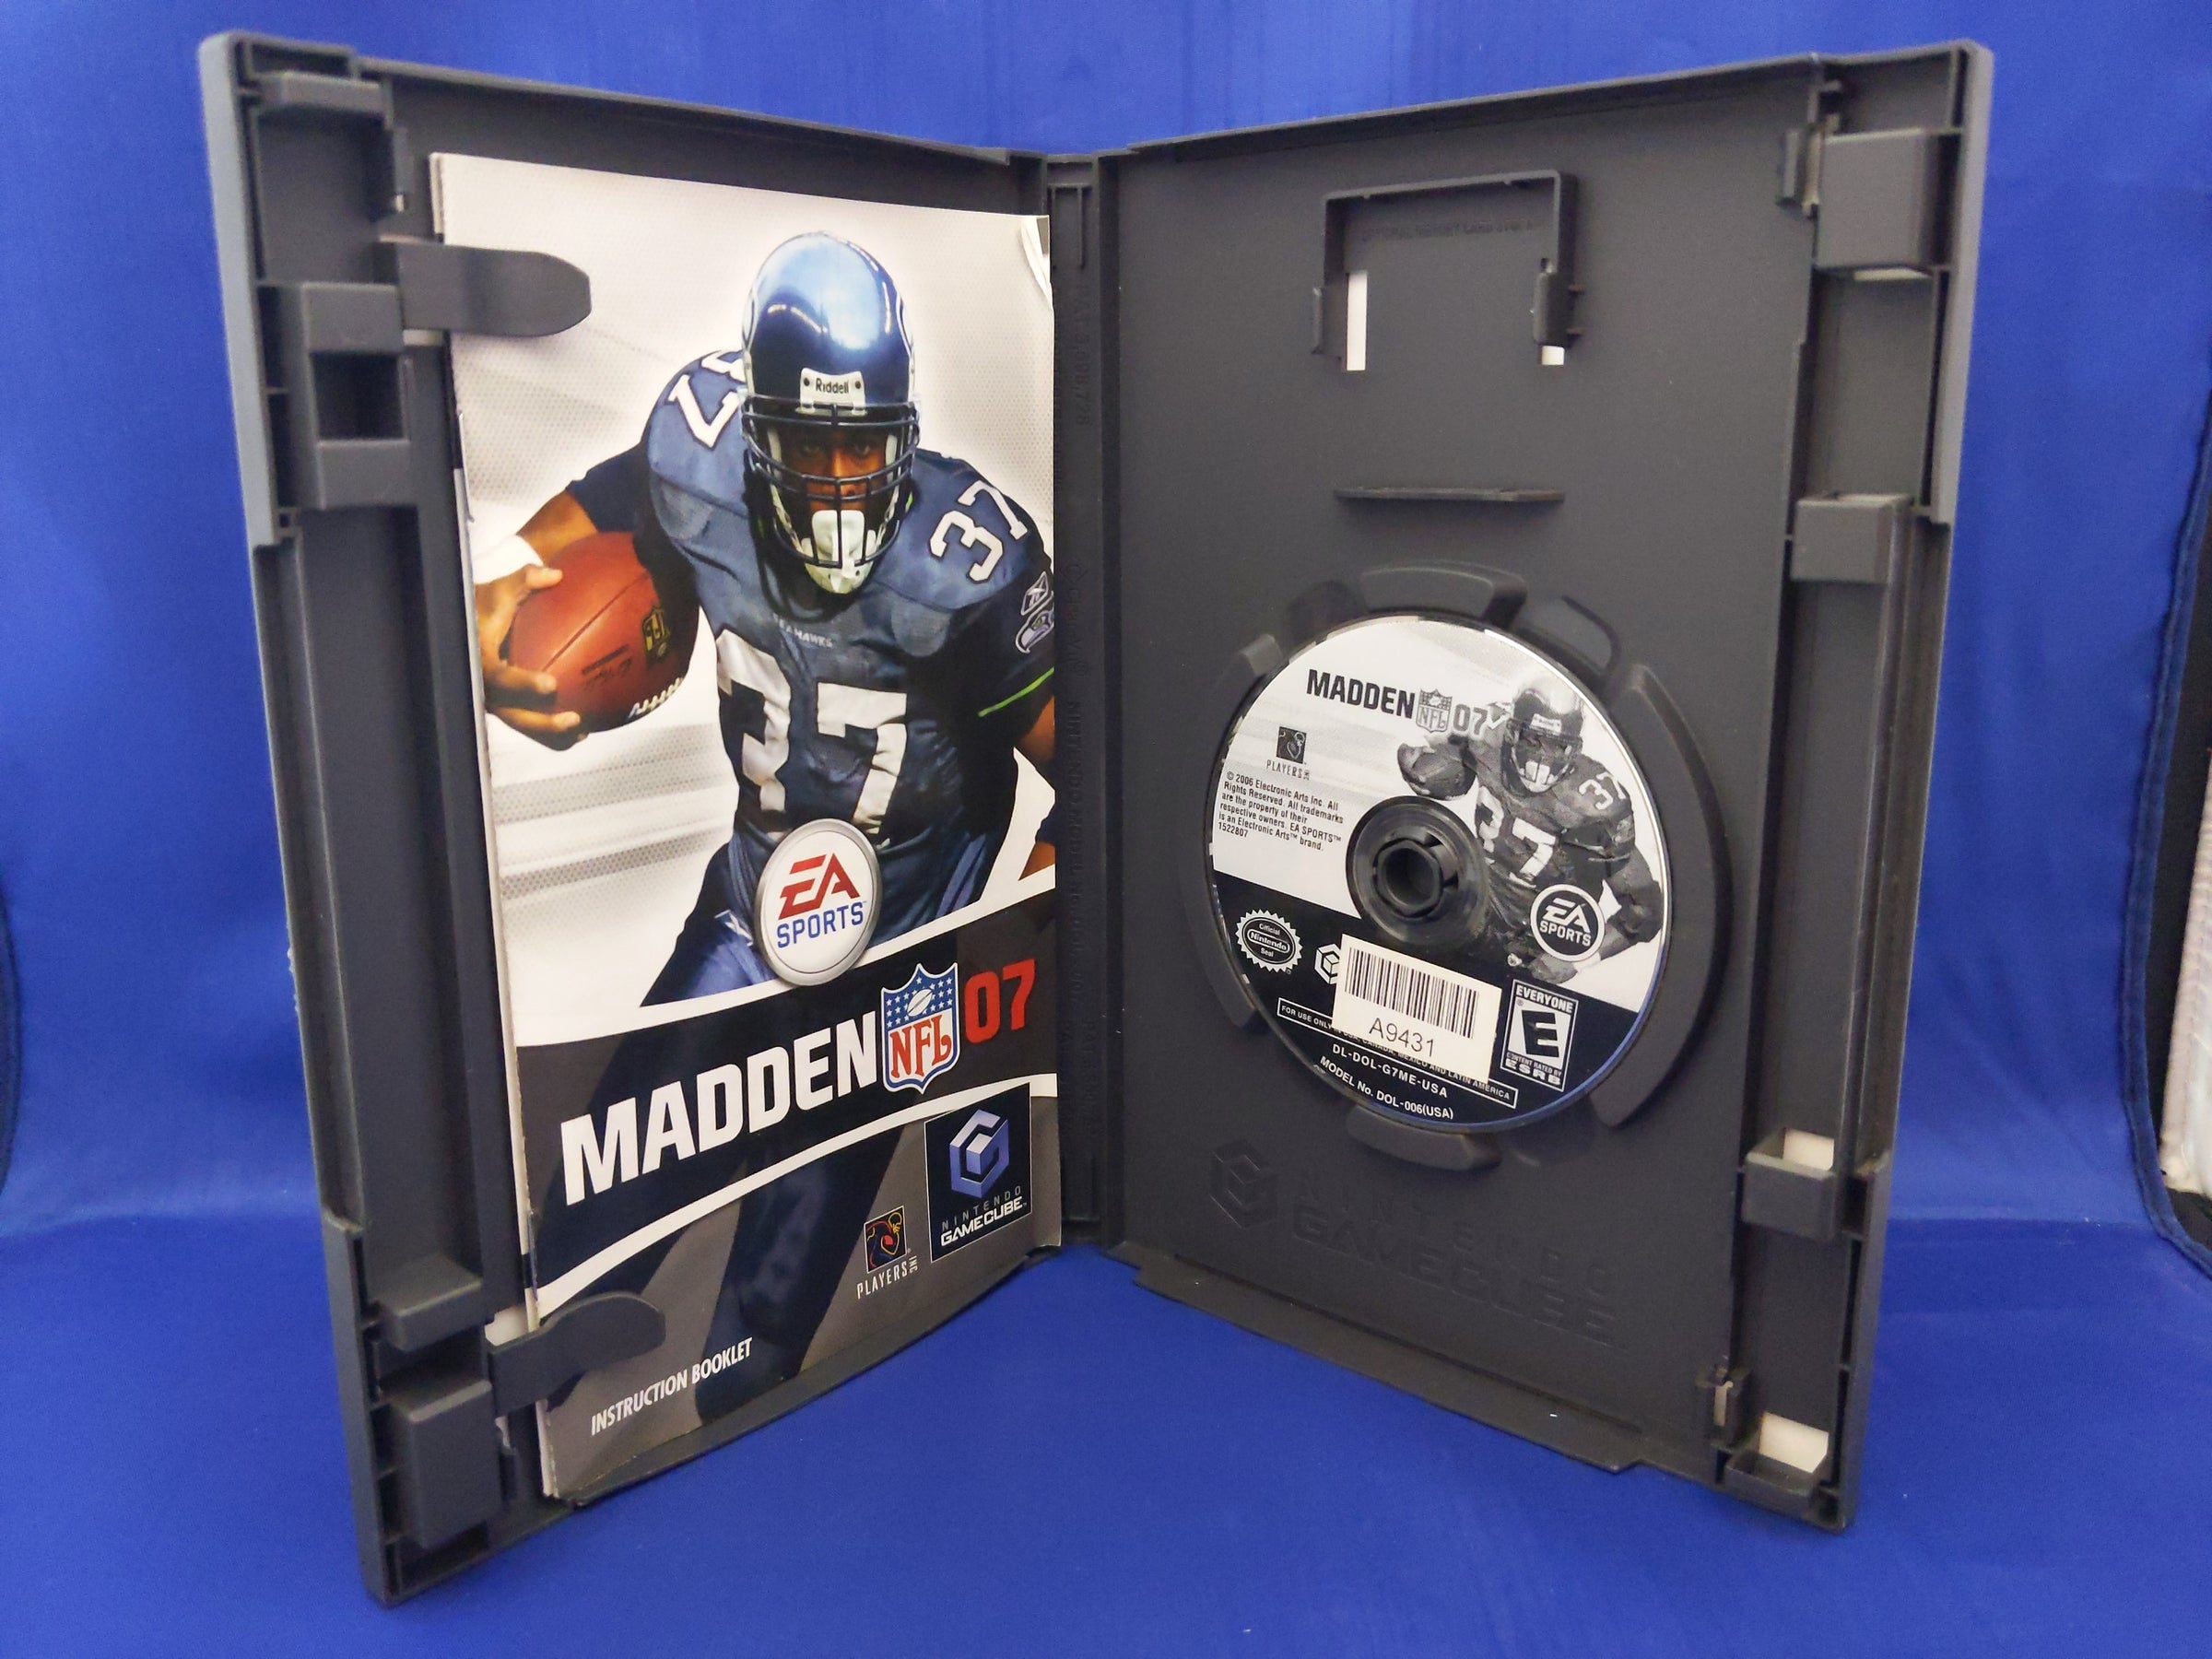 Madden NFL 07 - Gamecube